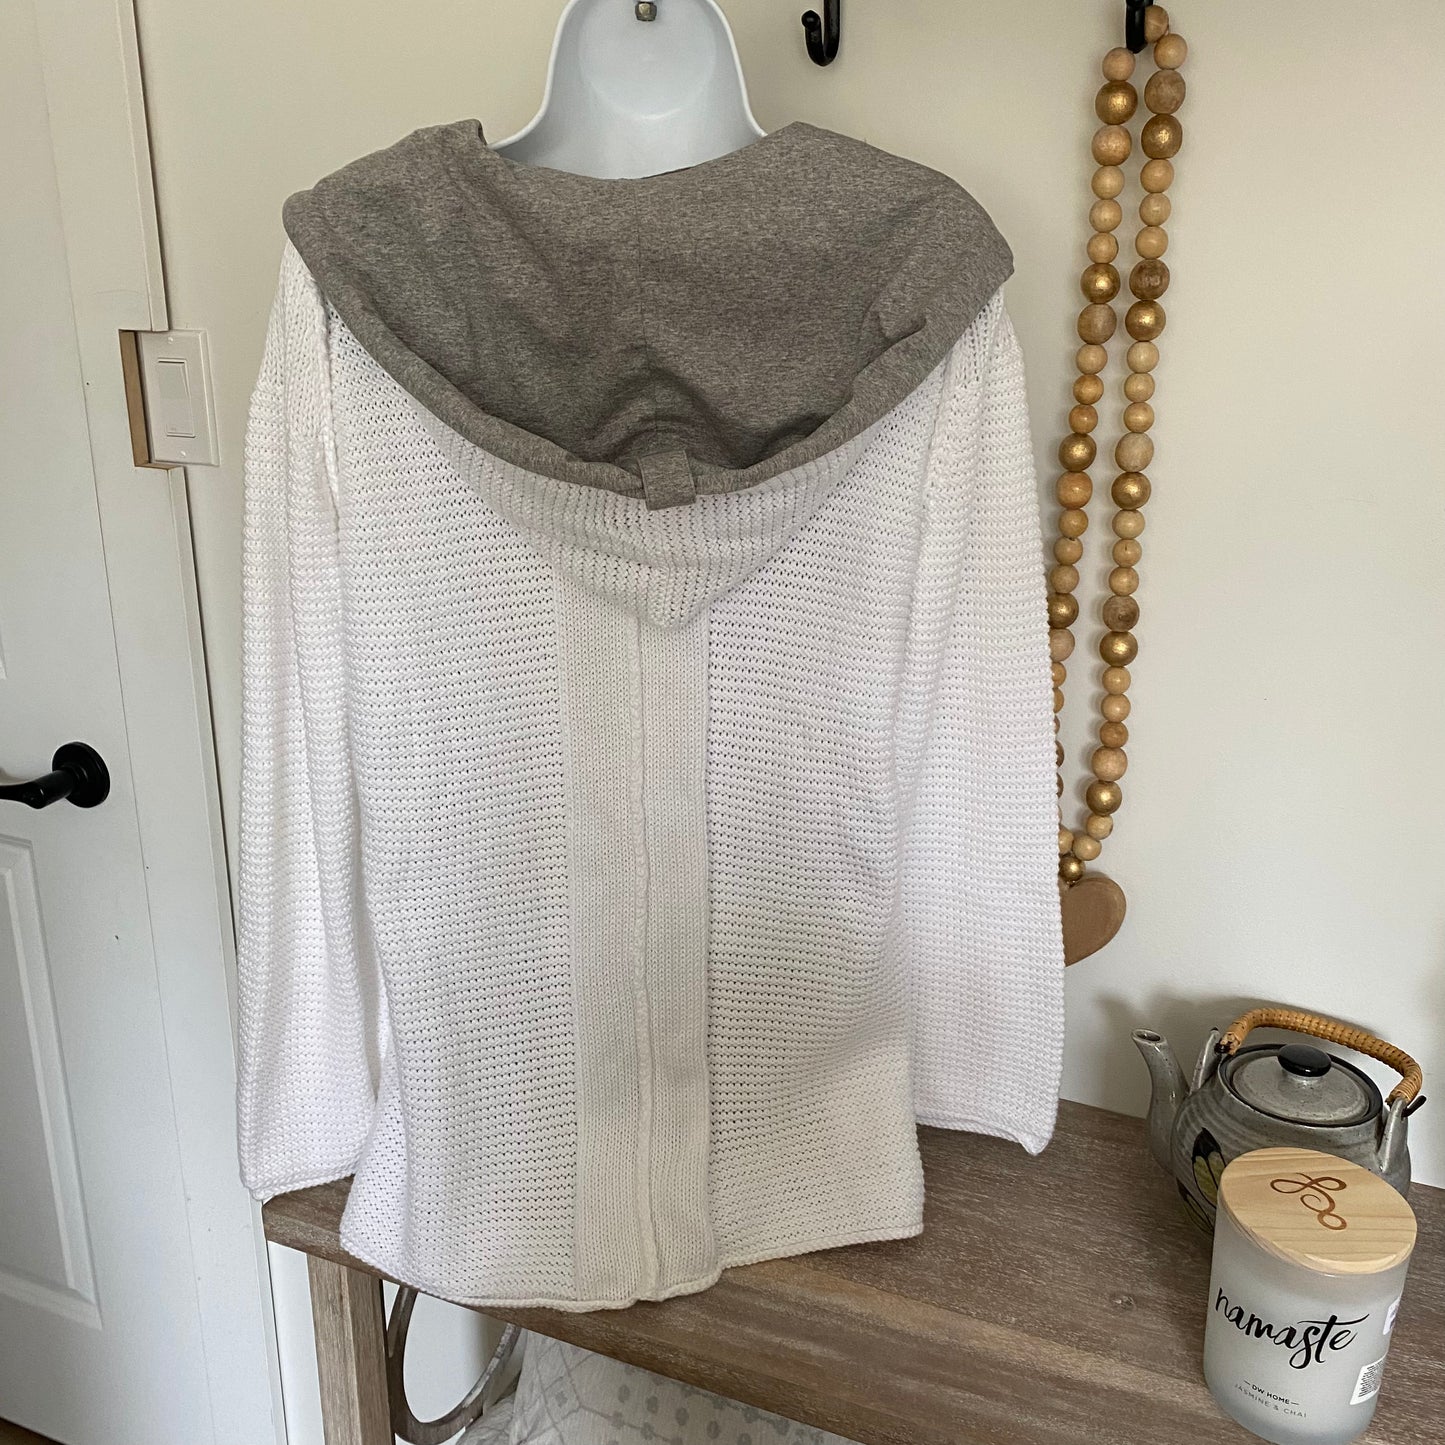 New Hooded Cardigan White Size Medium to Large